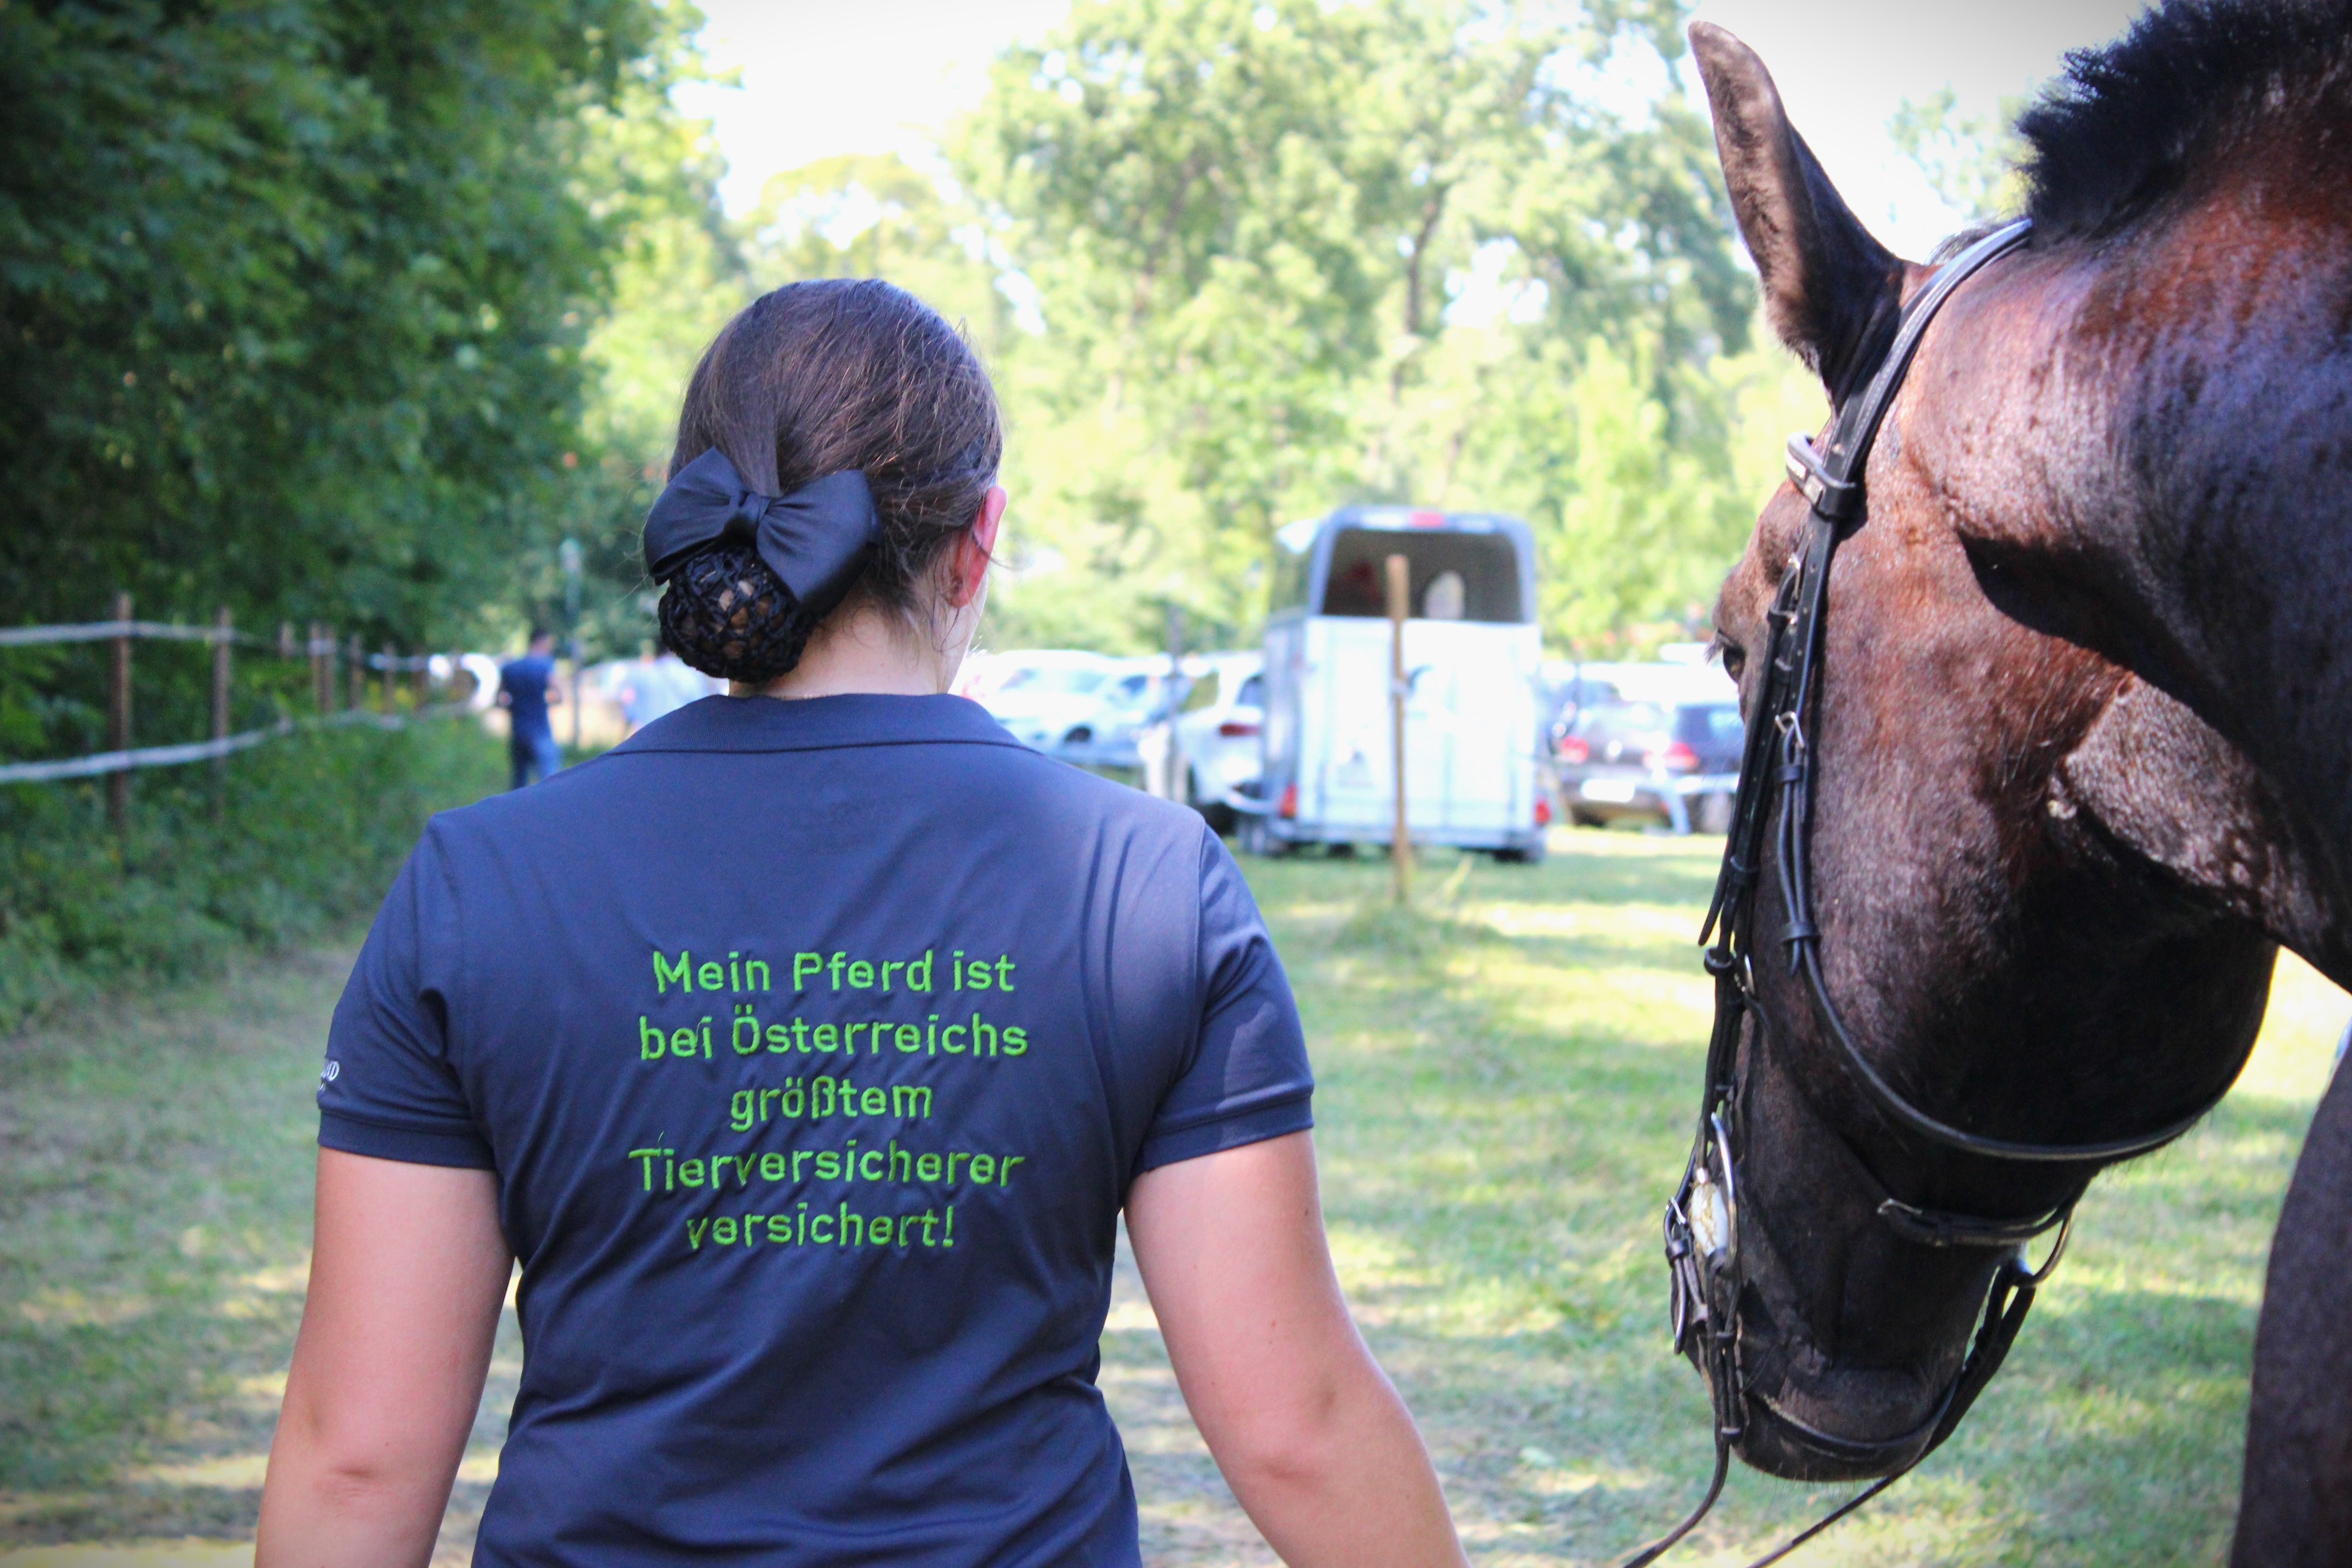 Rückenansicht einer Frau, die ein Pferd am Strick führt und auf ihrem T-Shirt die Aufschrift "Mein Pferd ist bei Österreichs größtem Tierversicherer versichert!" trägt.